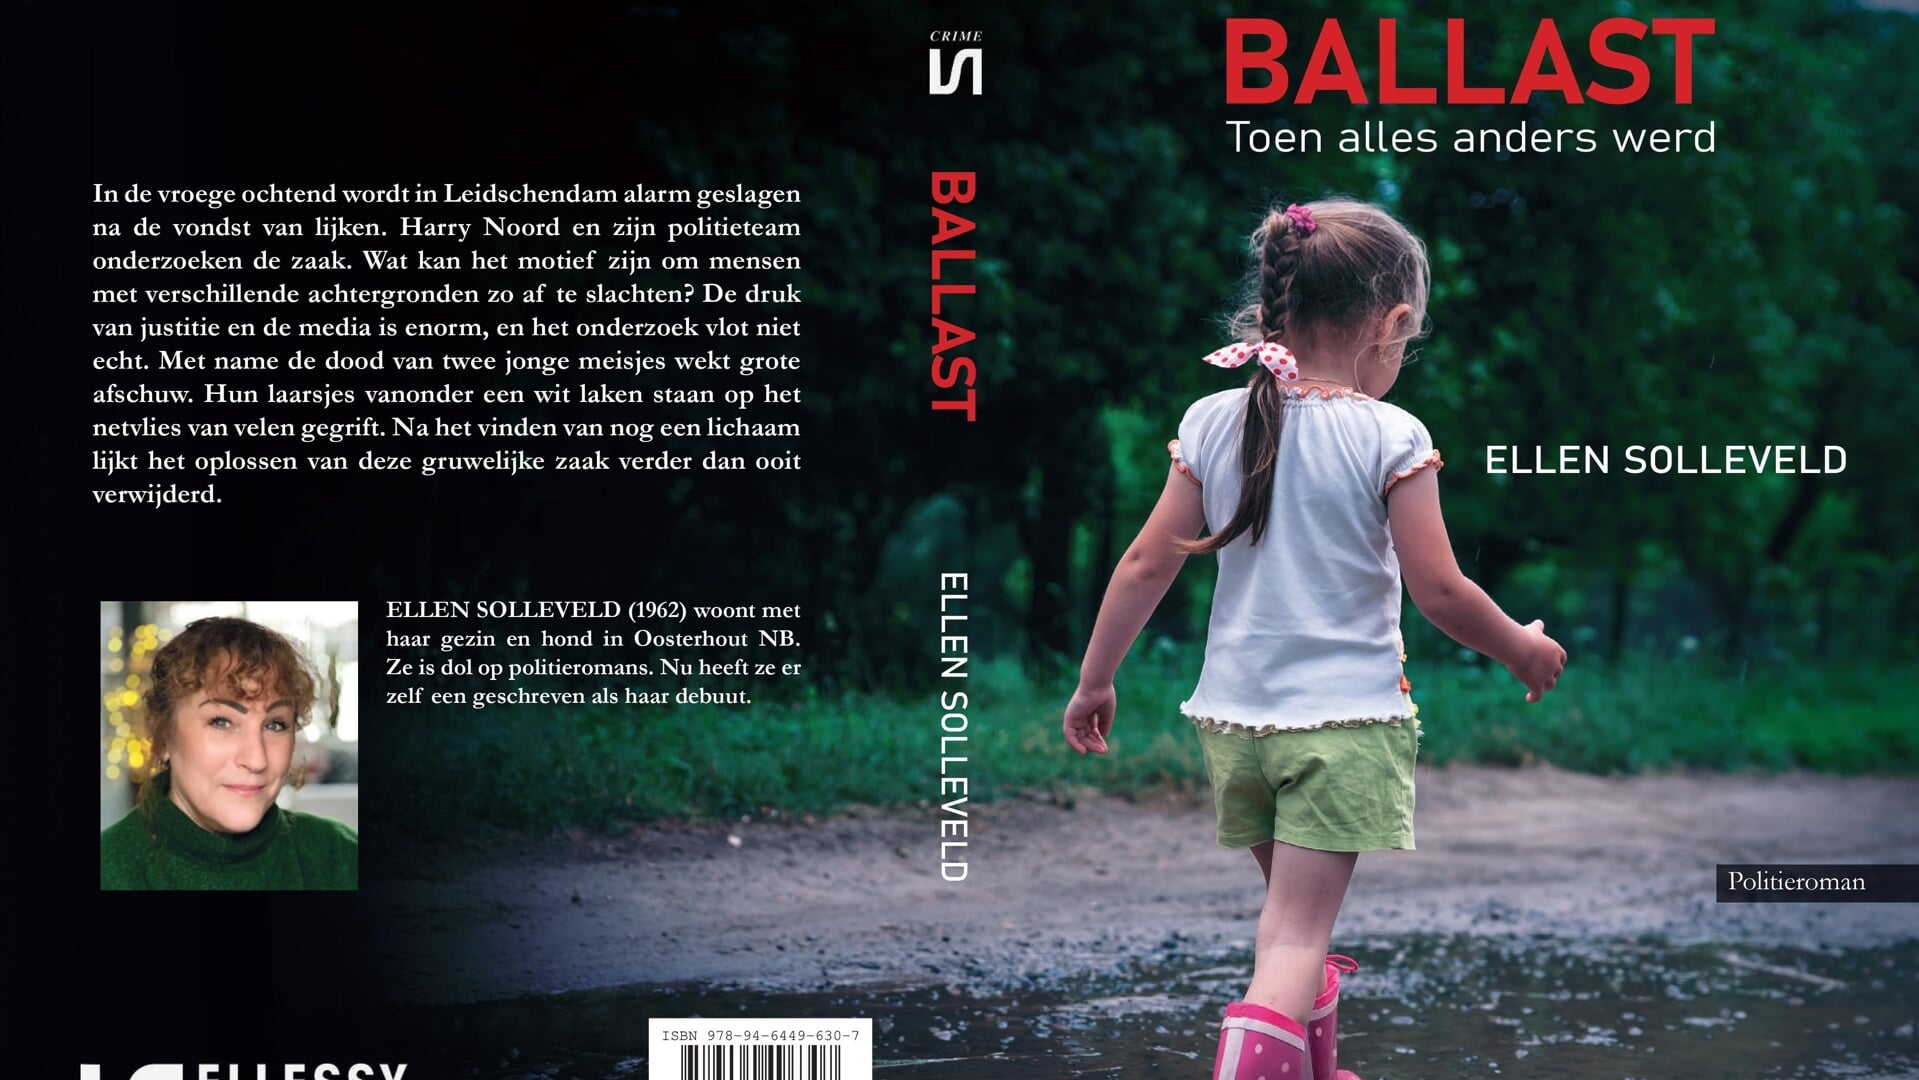 Cover van de spannende politieroman Ballast van Ellen Solleveld (foto: pr).